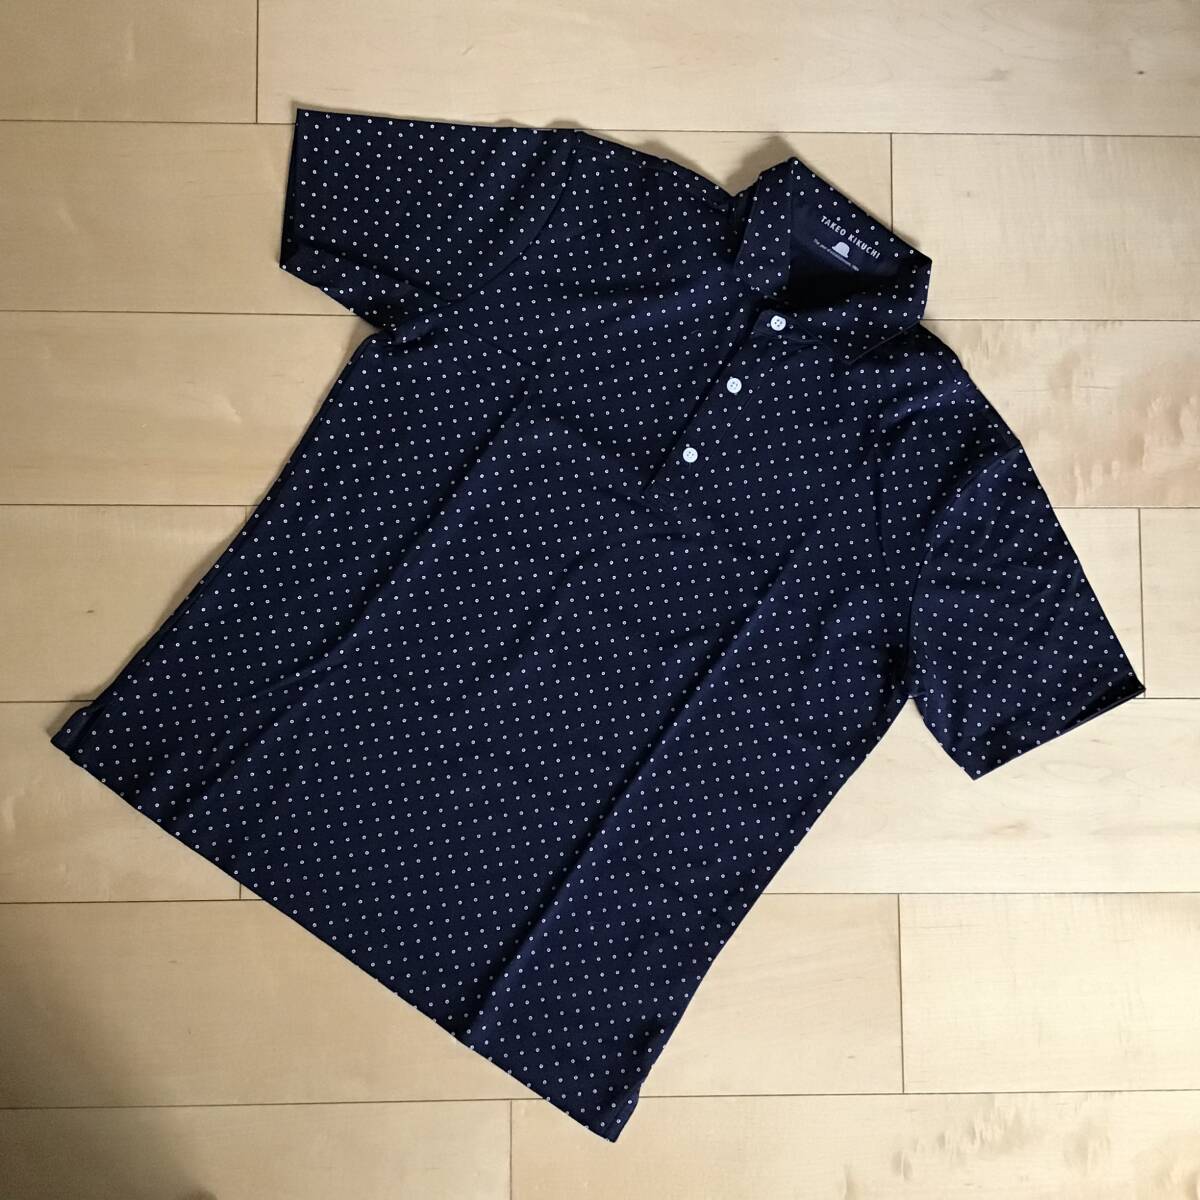  новый товар не использовался товар TAKEO KIKUCHI Takeo Kikuchi рубашка-поло с коротким рукавом размер 3(L размер ) темно-синий темно-синий 